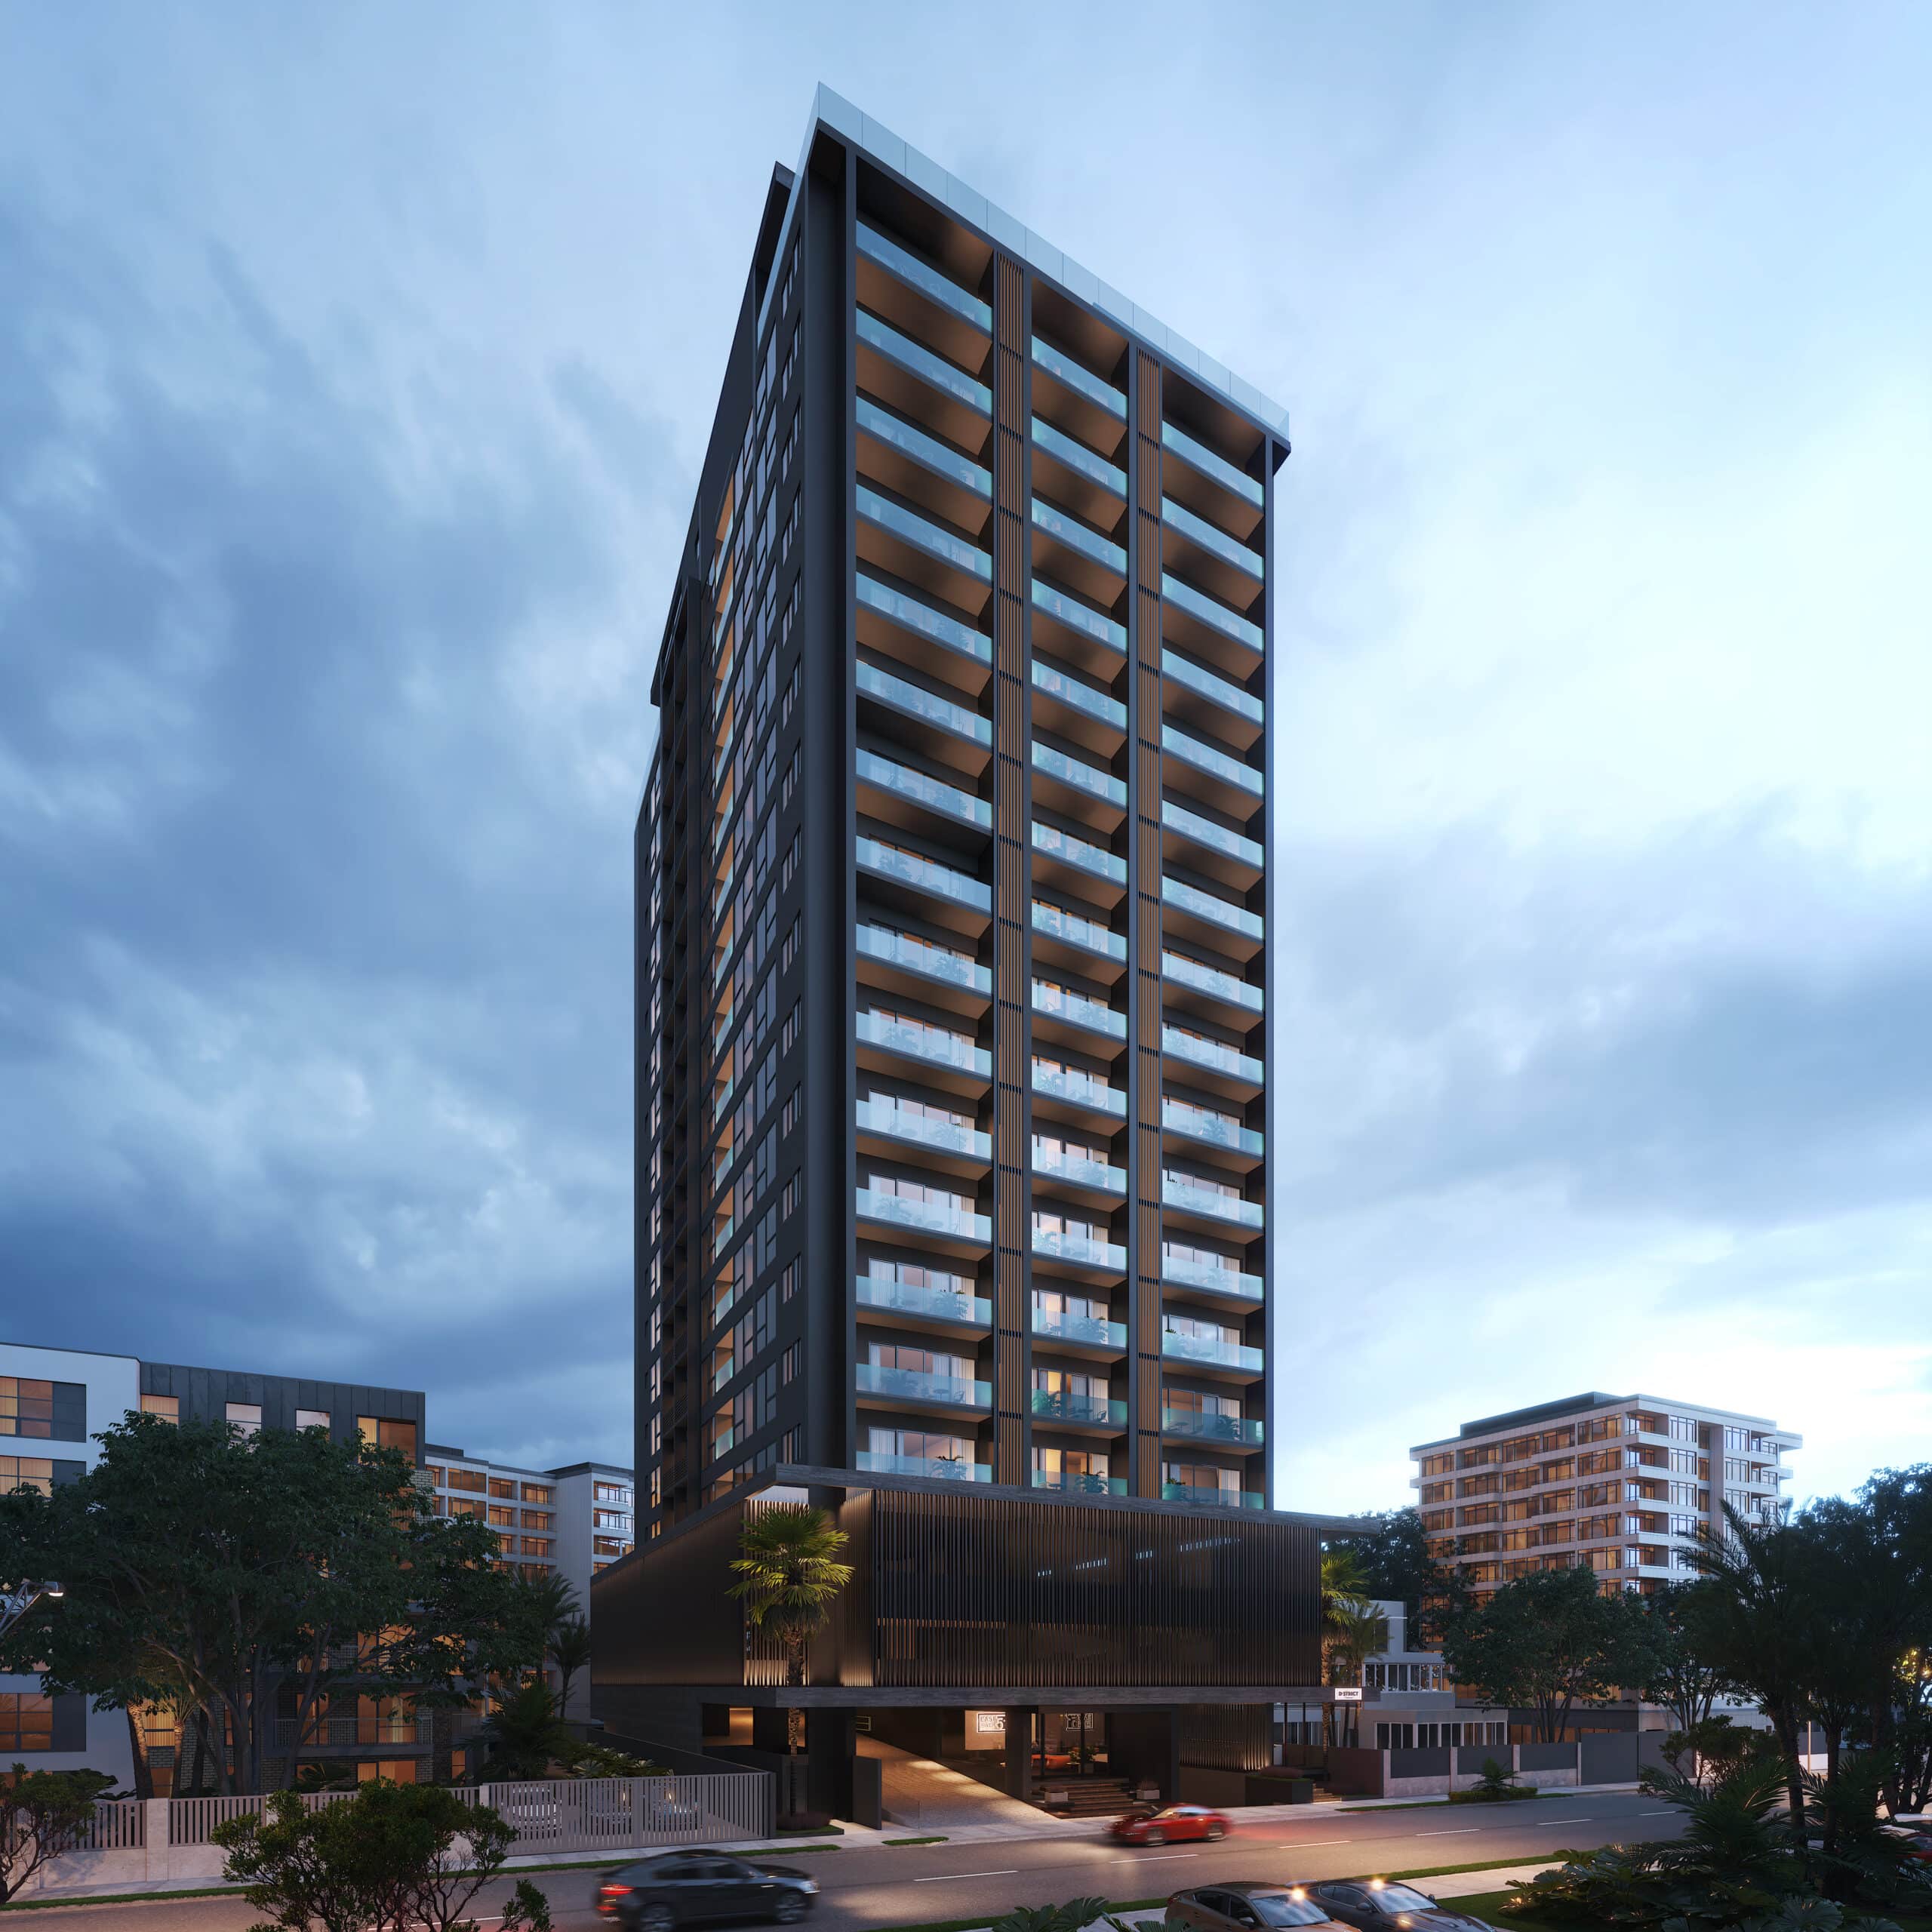 Torre estilo Condo Hotel con 19 niveles, en Ensanche Ozama, con alta proyeccion de rentabilidad.